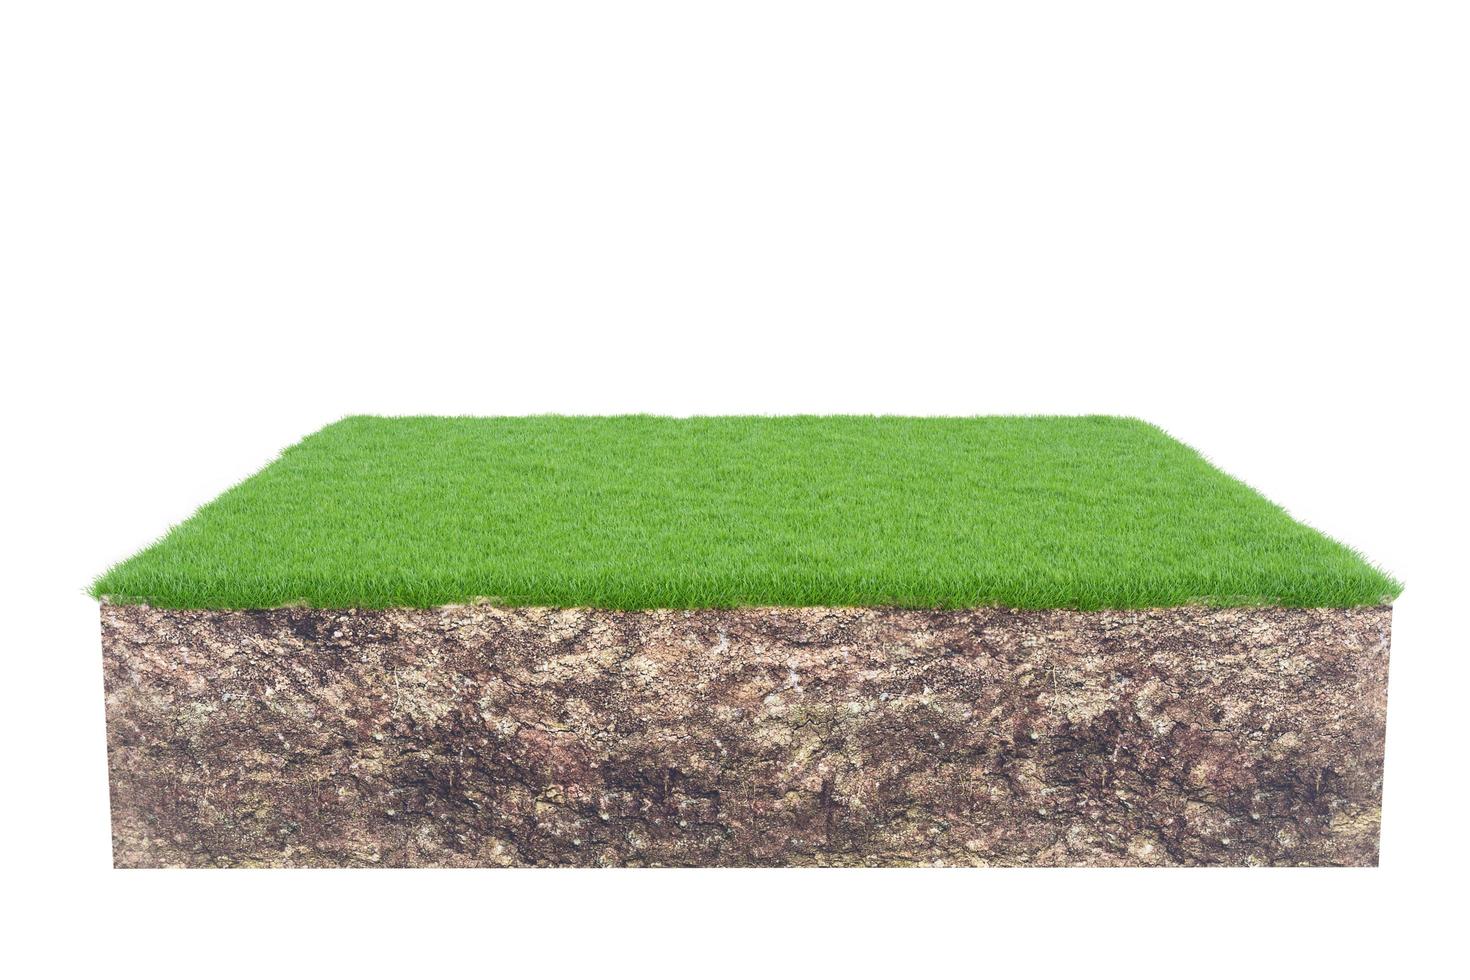 herbe verte avec coupe transversale de la géologie des terres du sol isolée sur fond blanc, rendu 3d photo